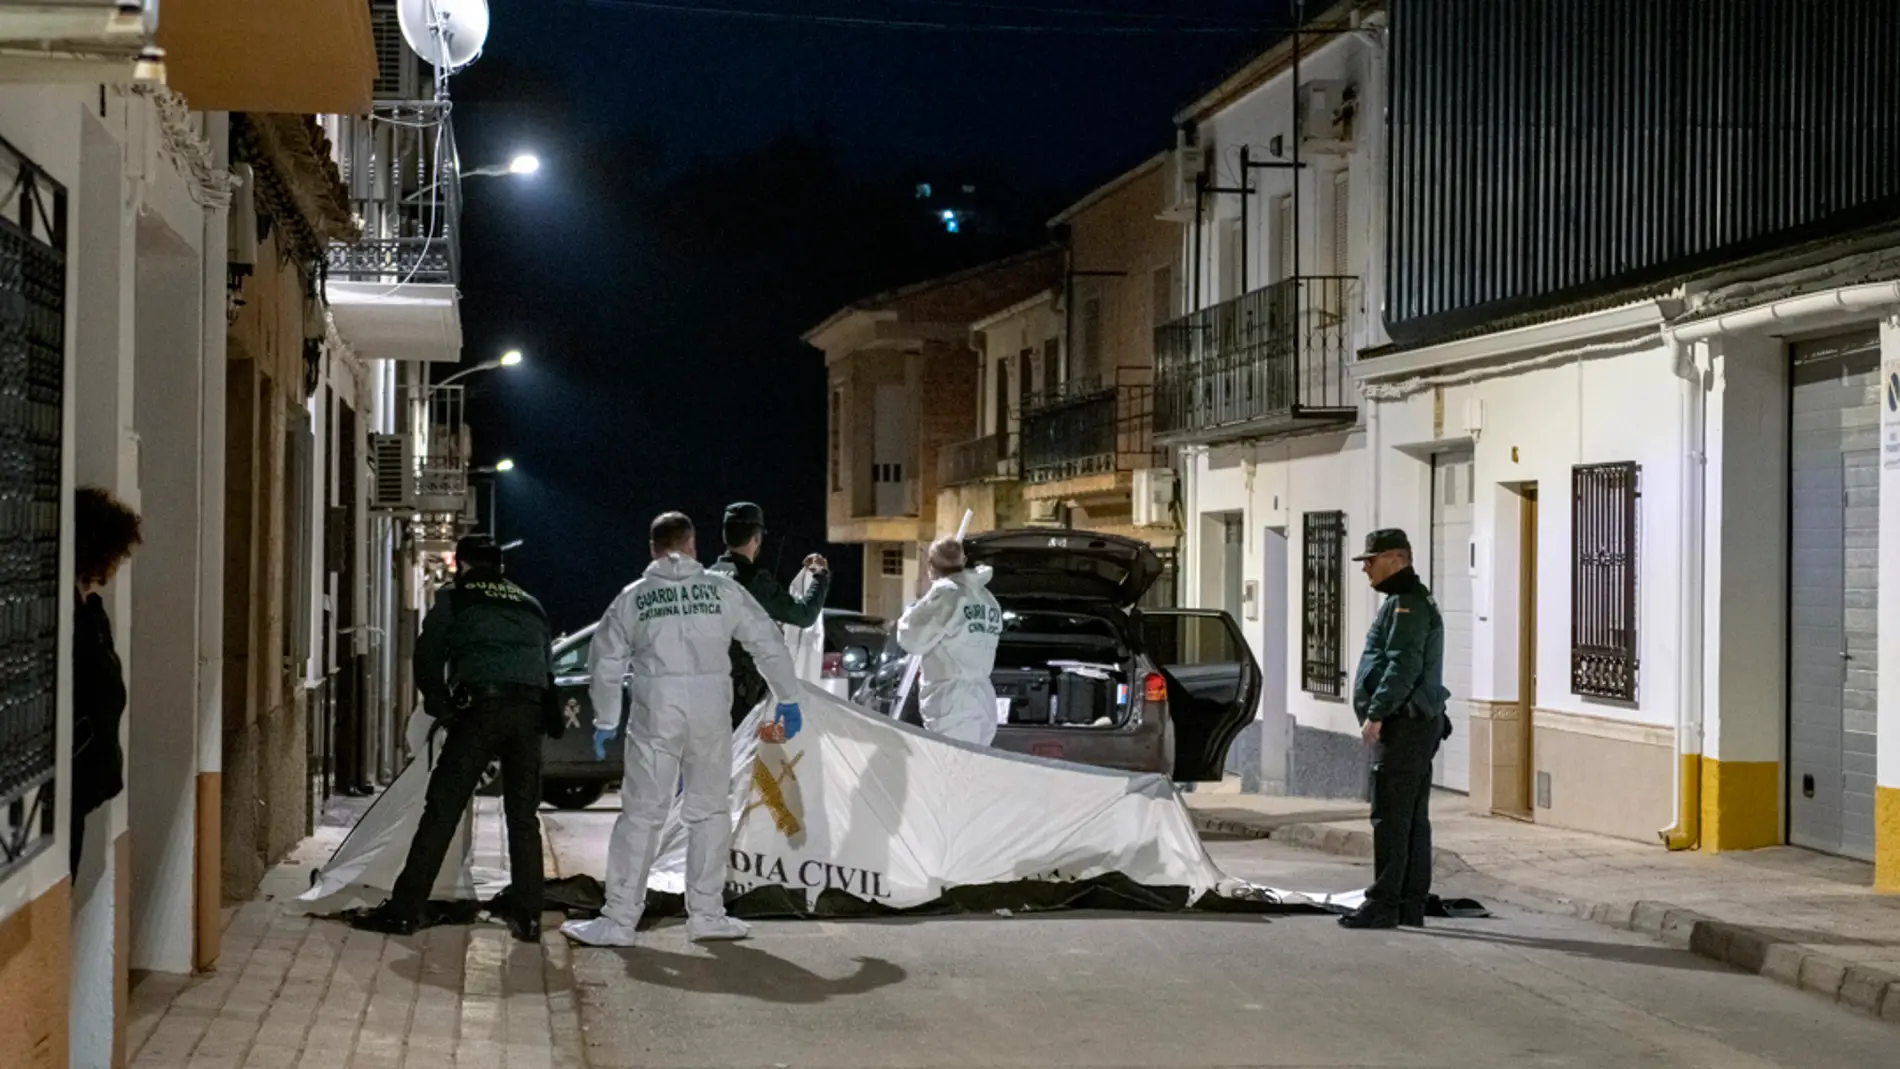 El matrimonio hallado muerto en Jaén podría haberse suicidado